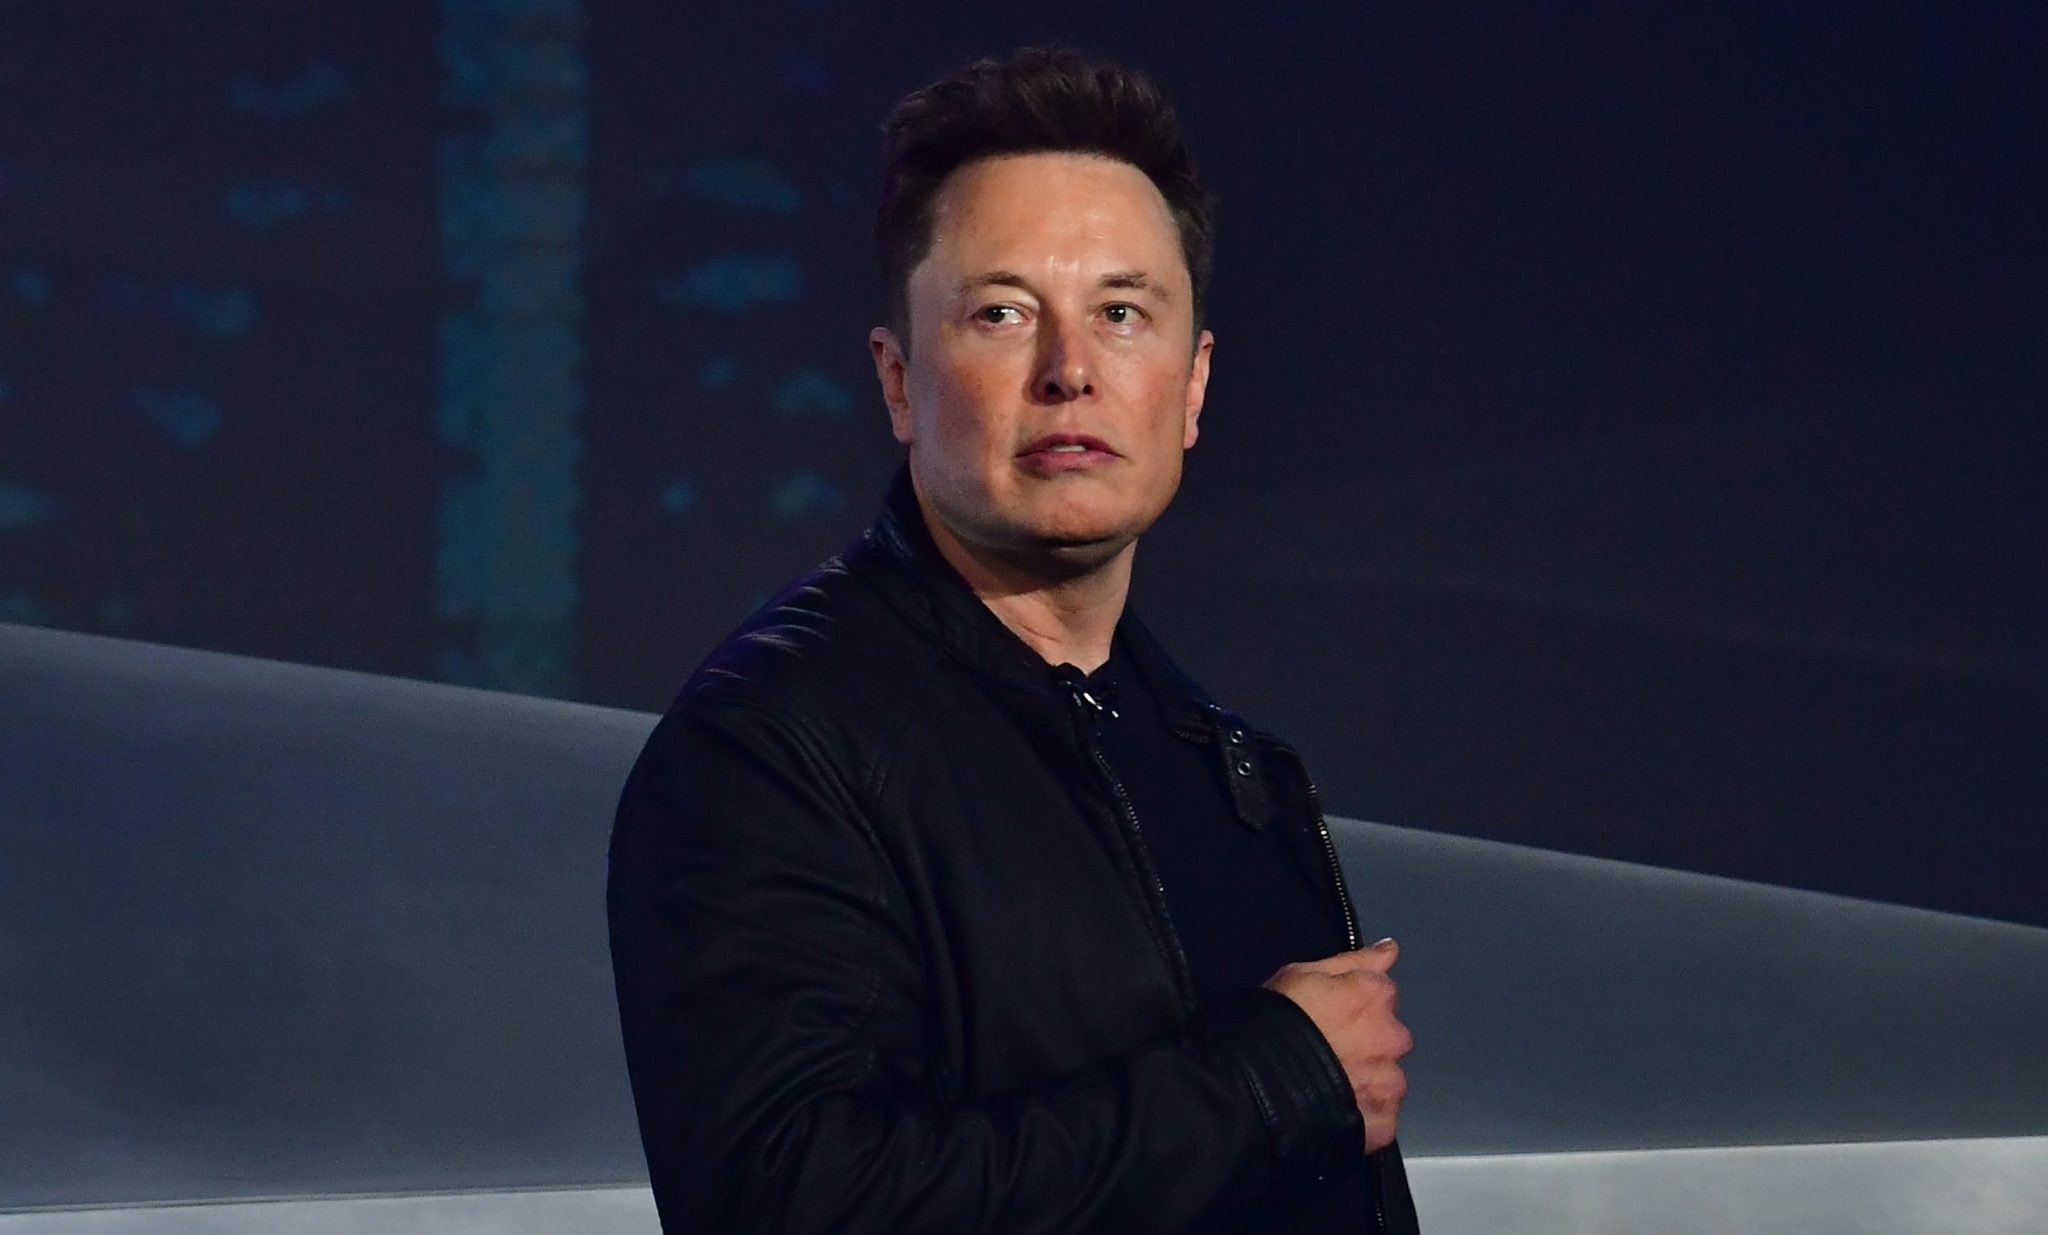 Tesla hasn’t released a new consumer model in years, cybertruck aside